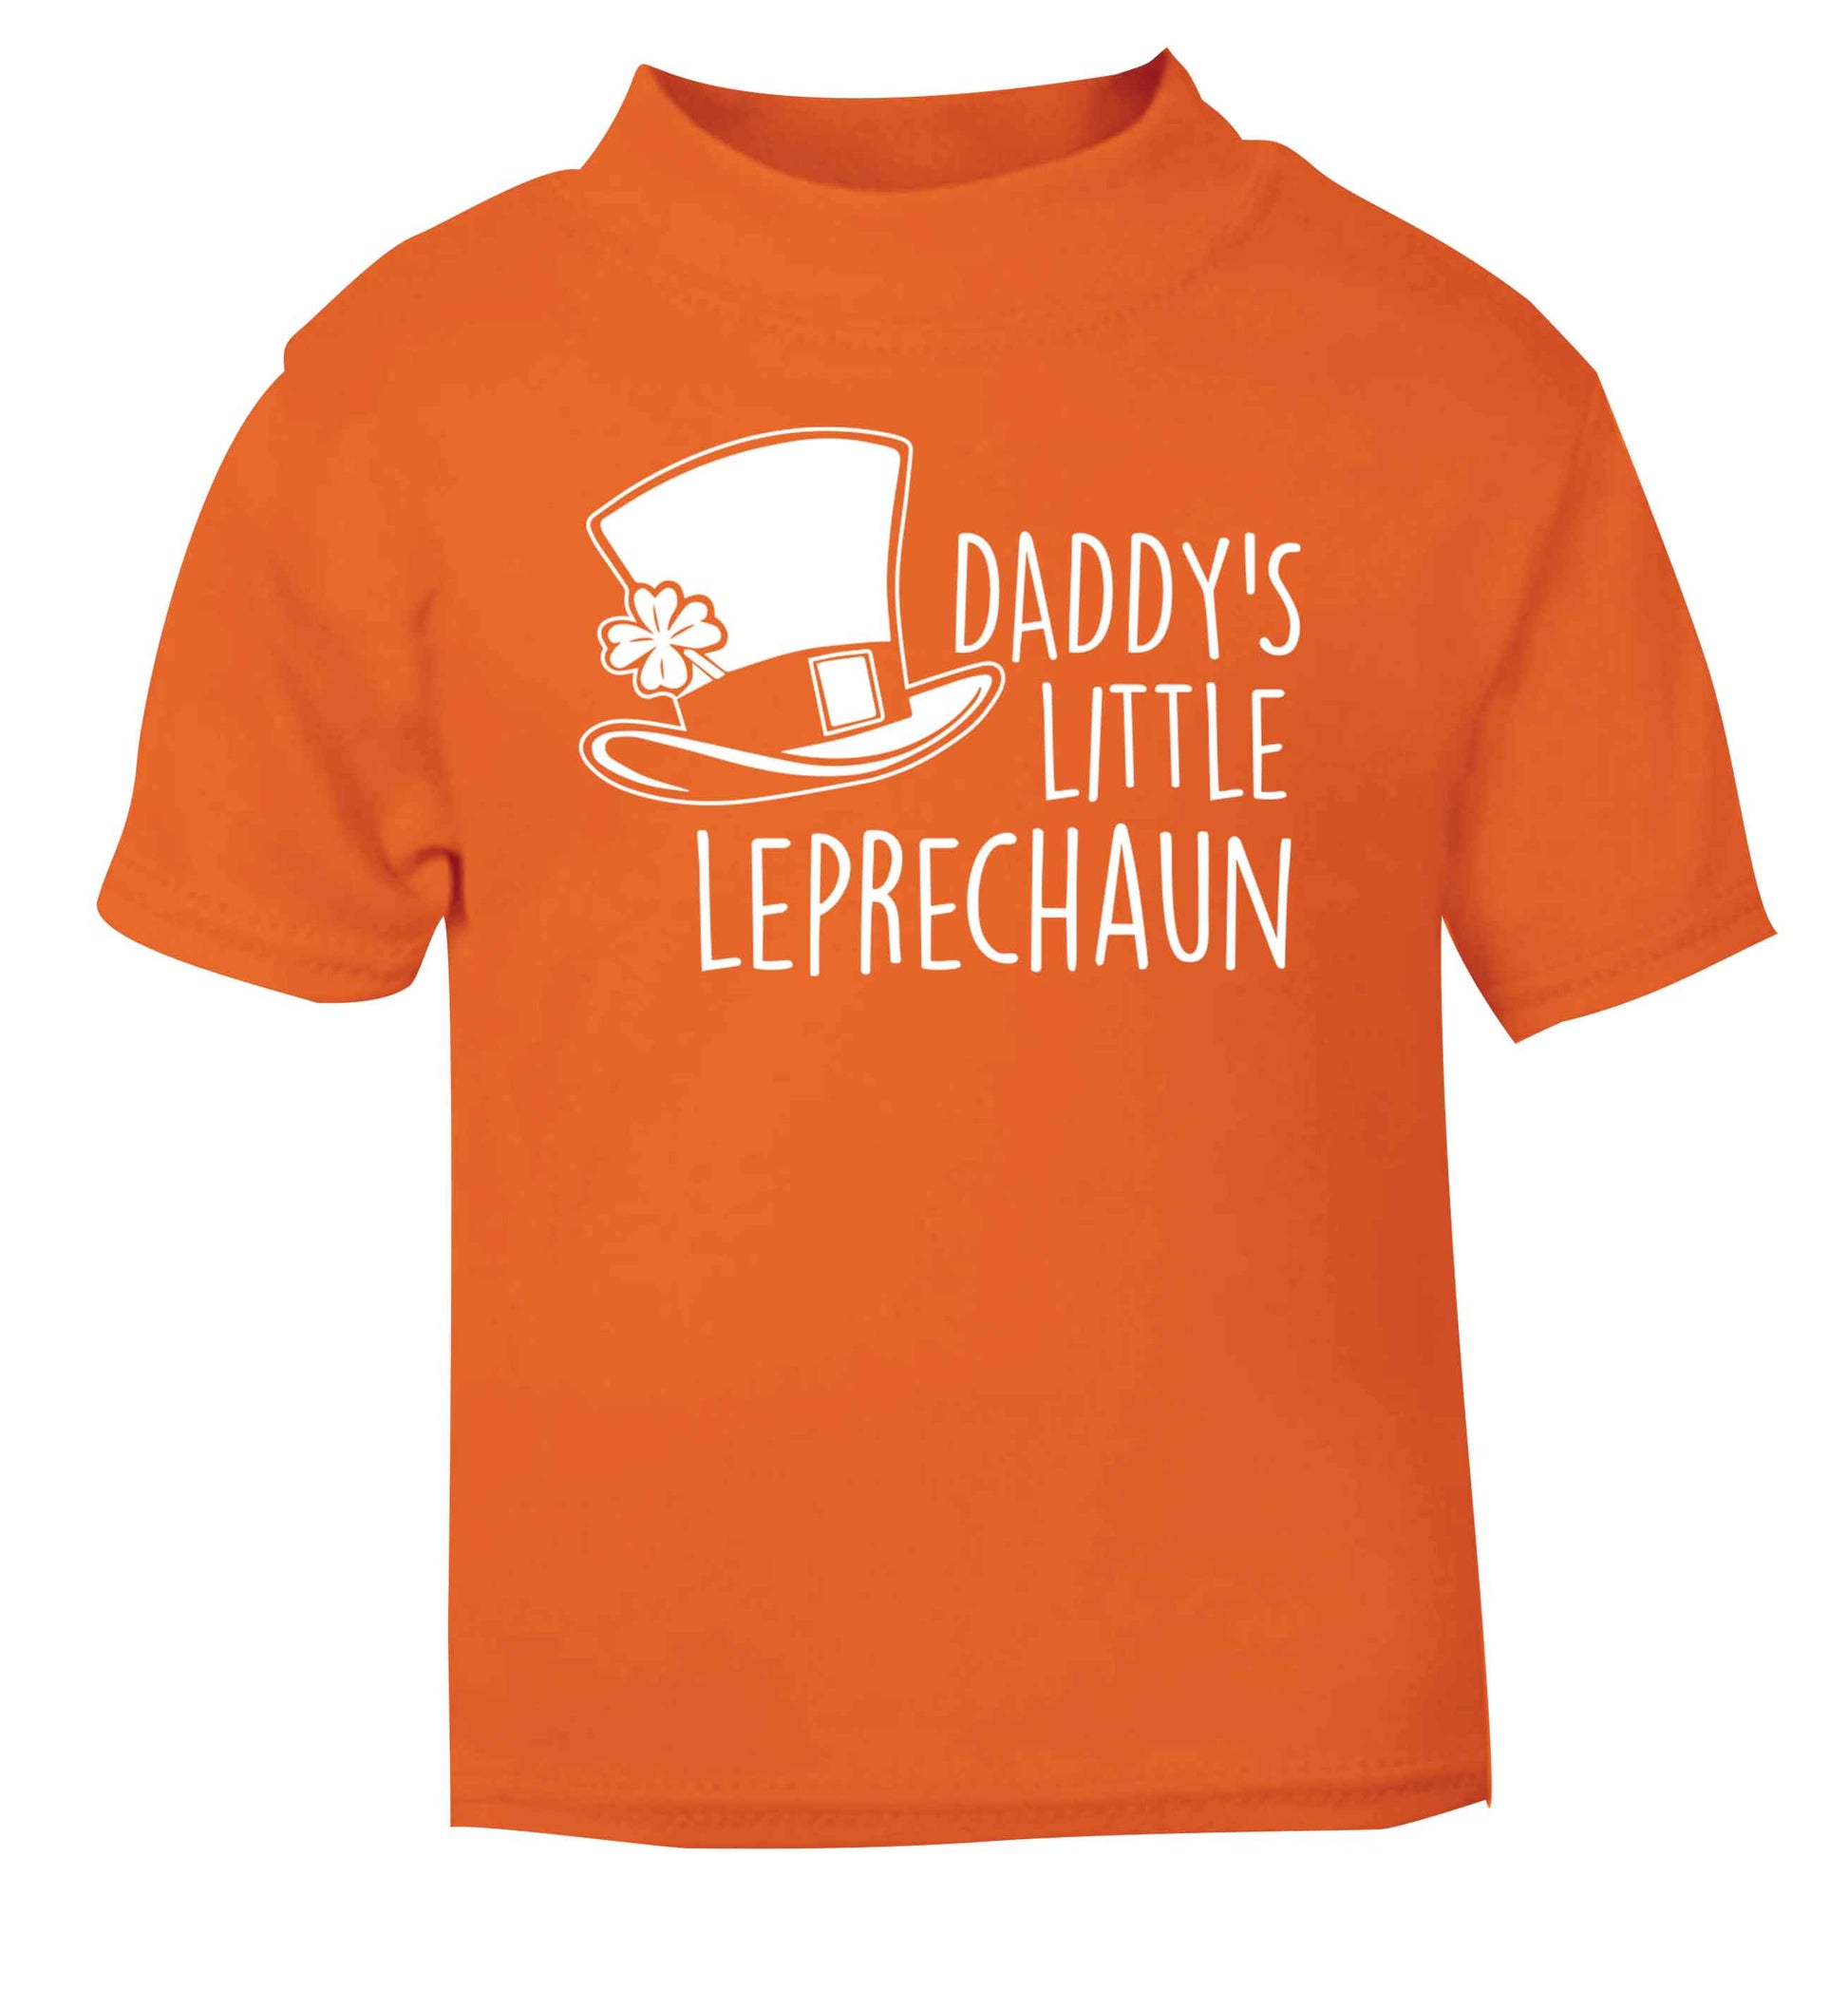 Daddy's little leprechaun orange baby toddler Tshirt 2 Years